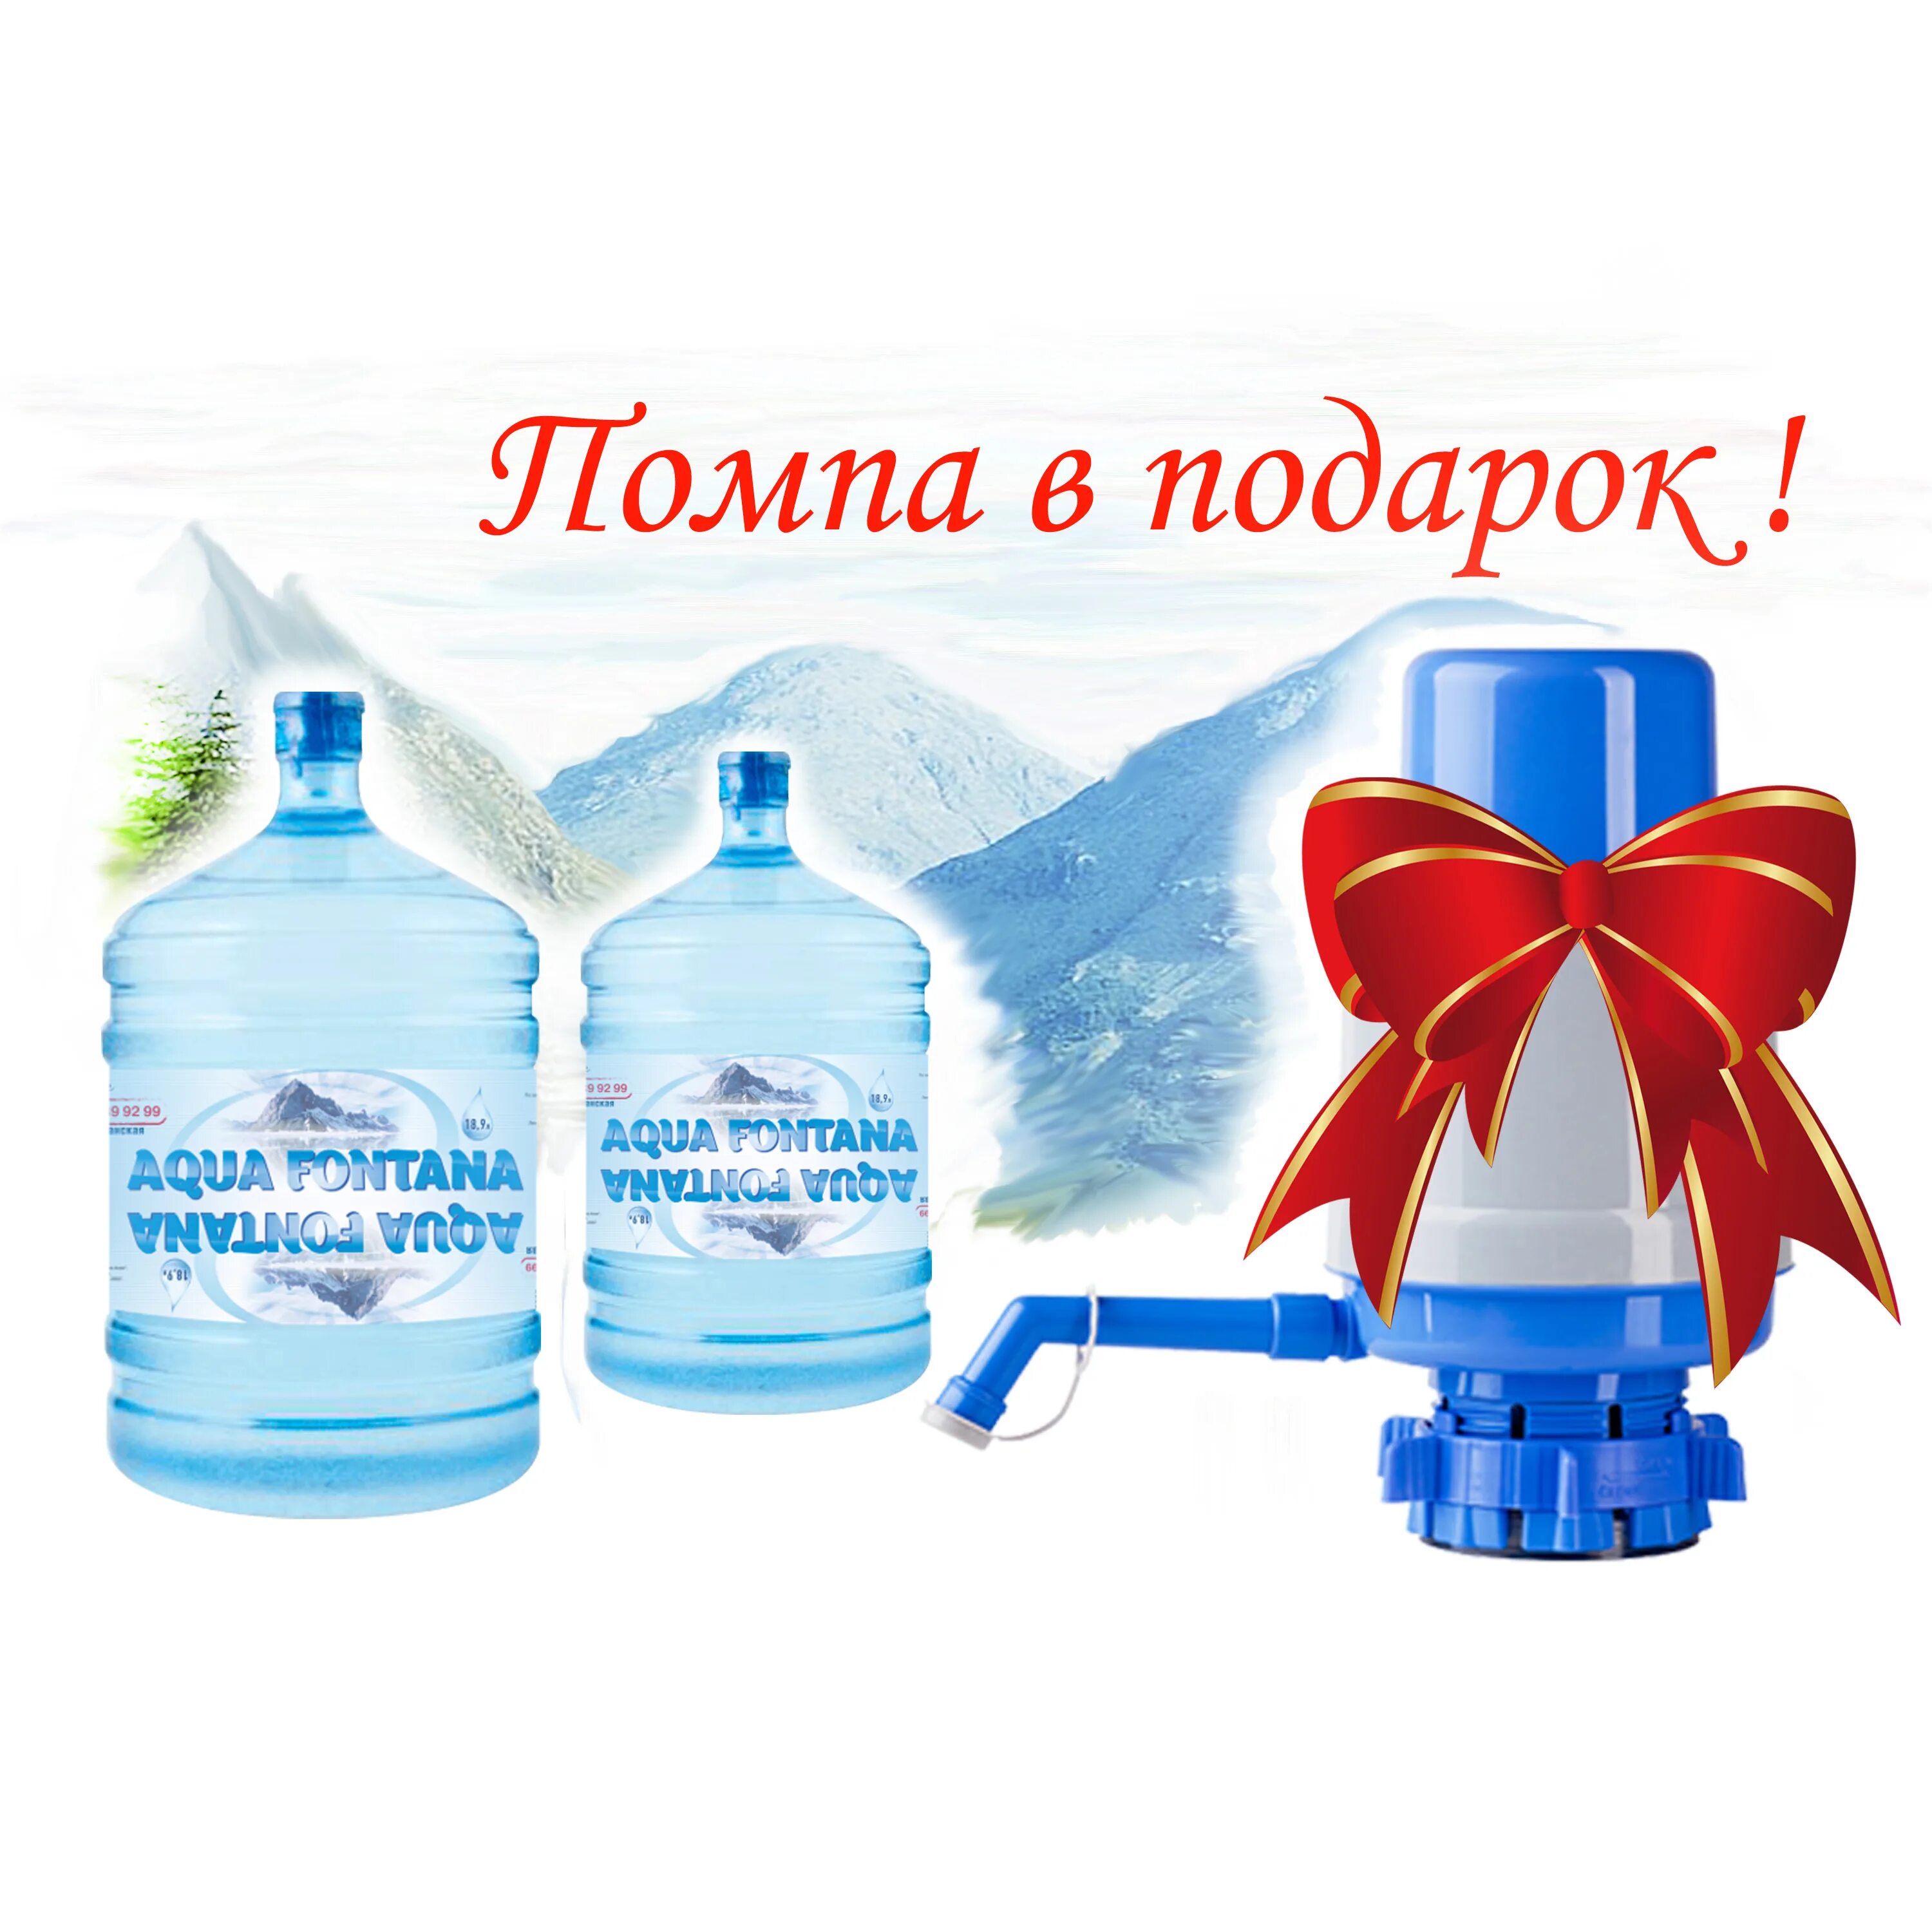 Вода отзывы. Вода помпа в подарок. Бутыль воды в подарок. Питьевая вода с помпой в подарок. Бутыль и помпа в подарок.